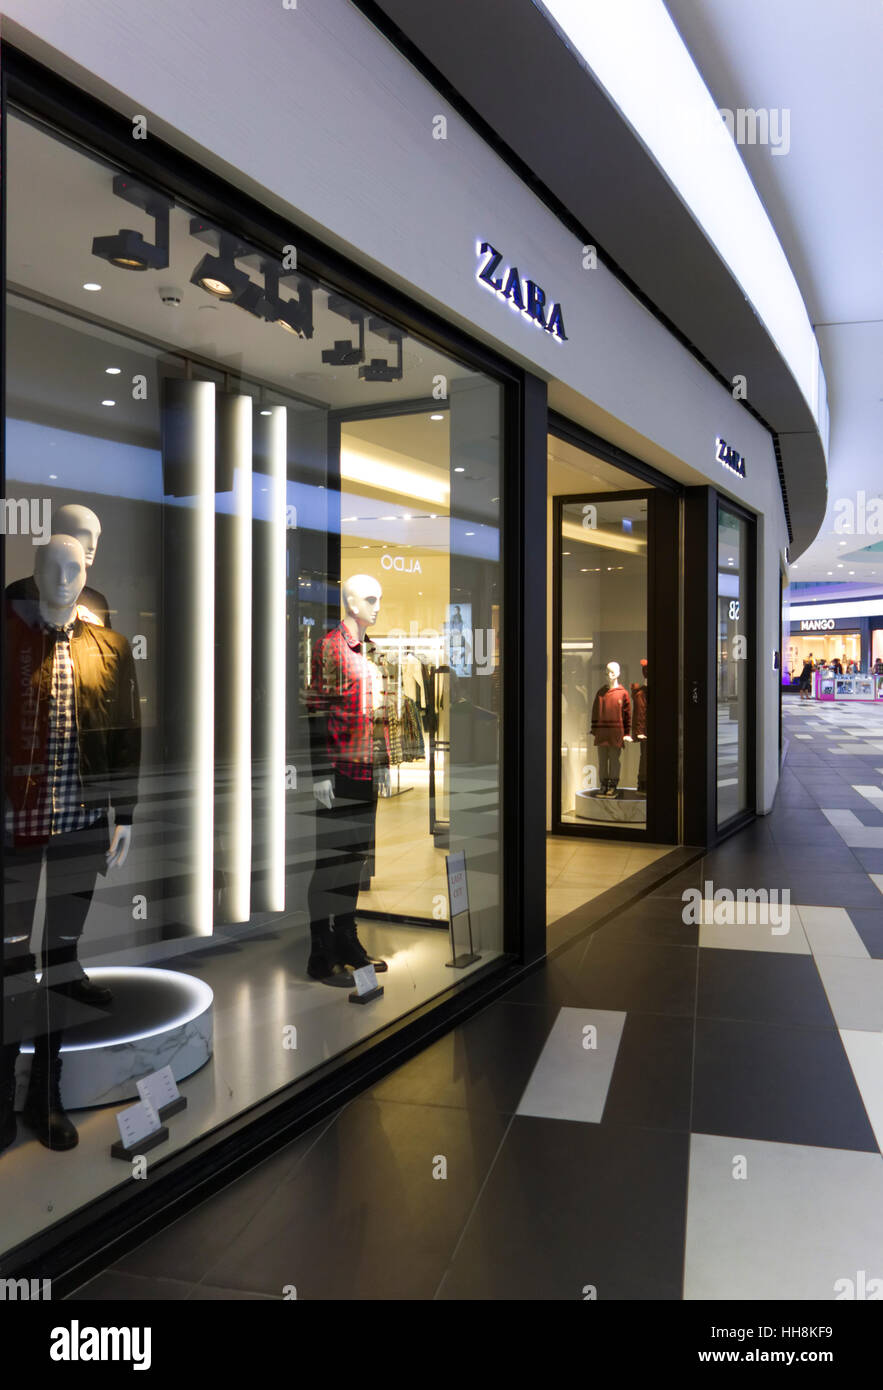 Zara shop window immagini e fotografie stock ad alta risoluzione - Alamy